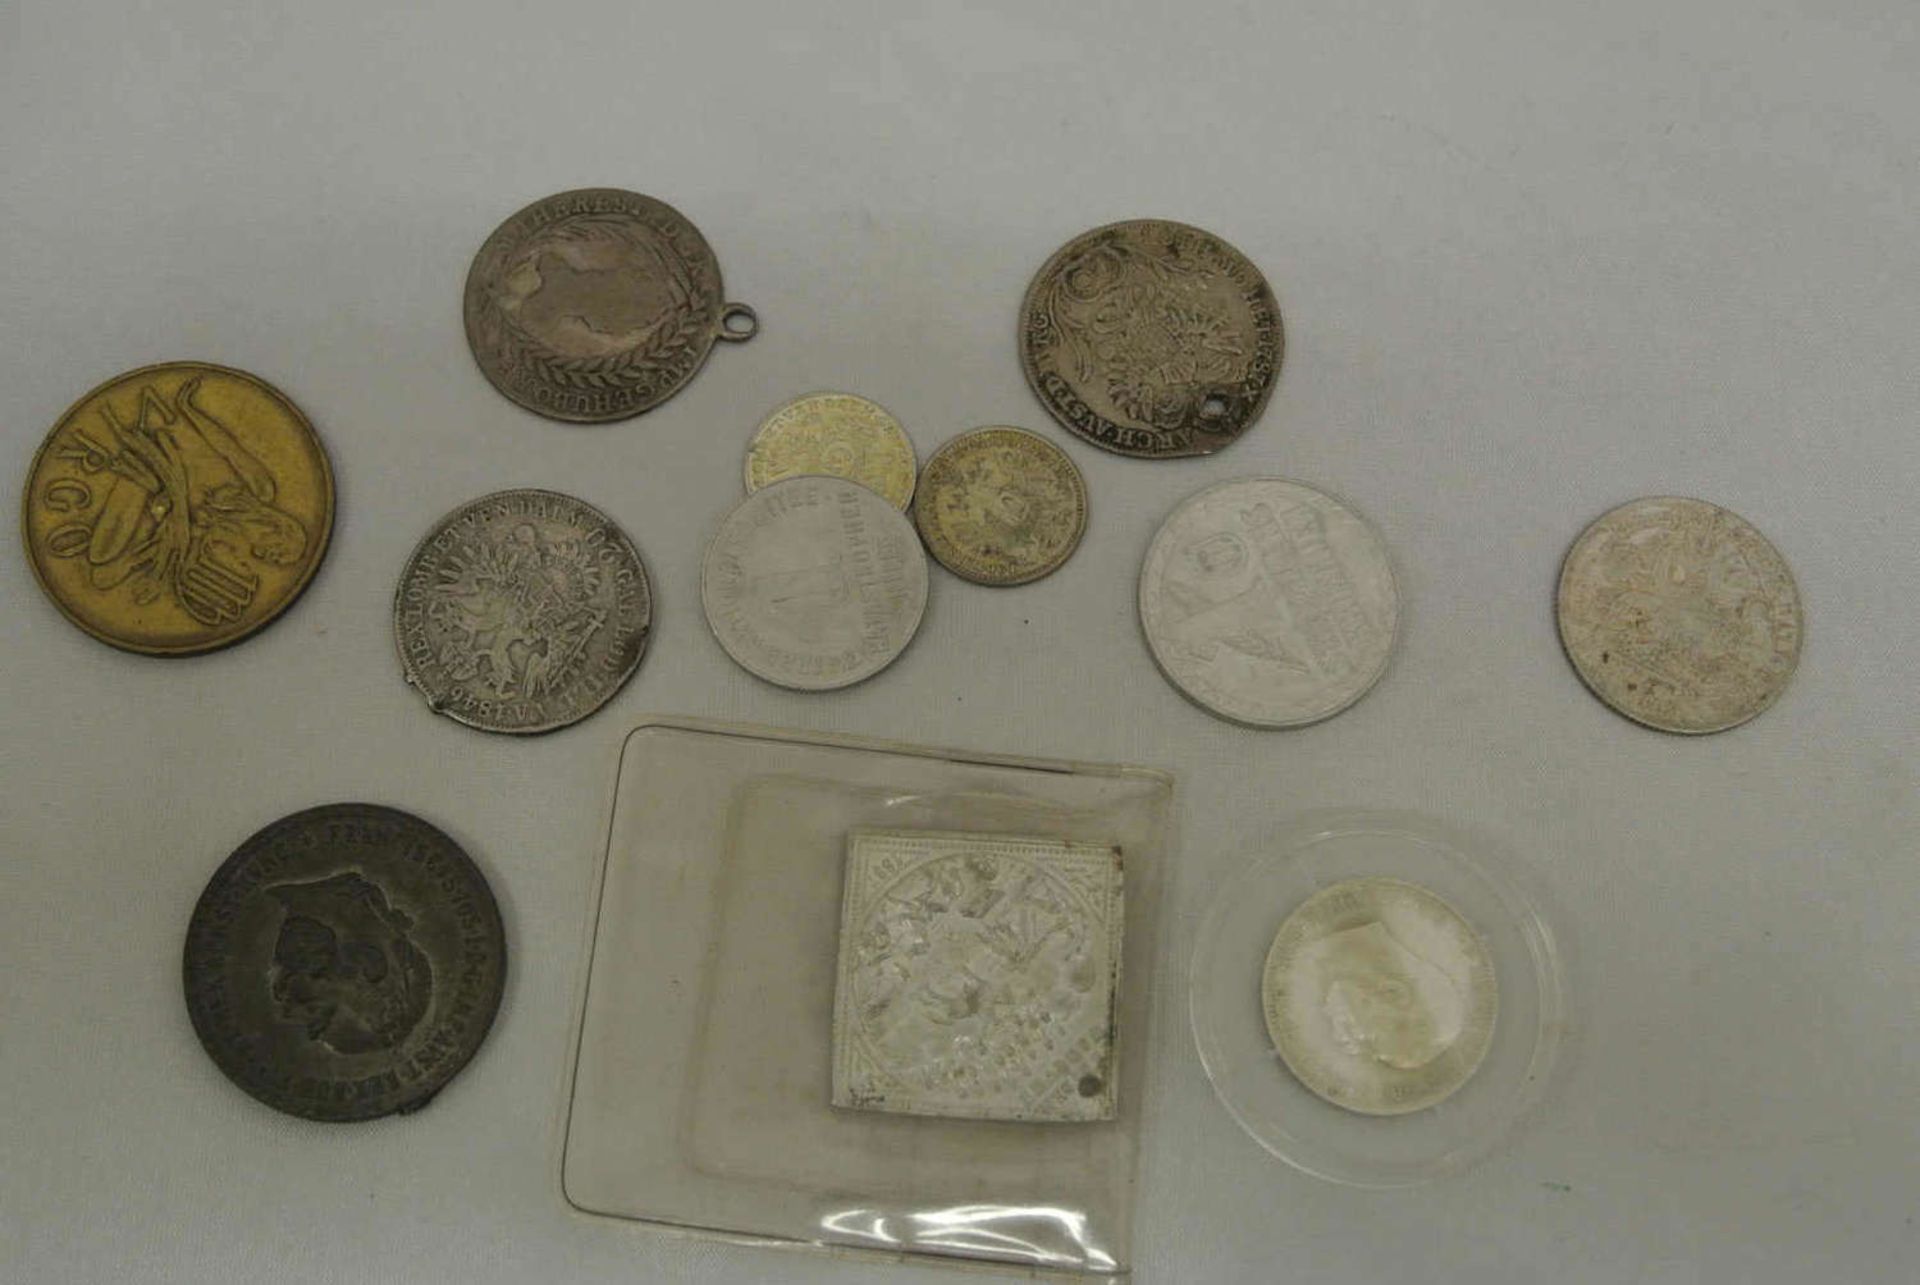 kleines Lot Münzen Österreich, teilweise gelocht. Kleine Fundgrube